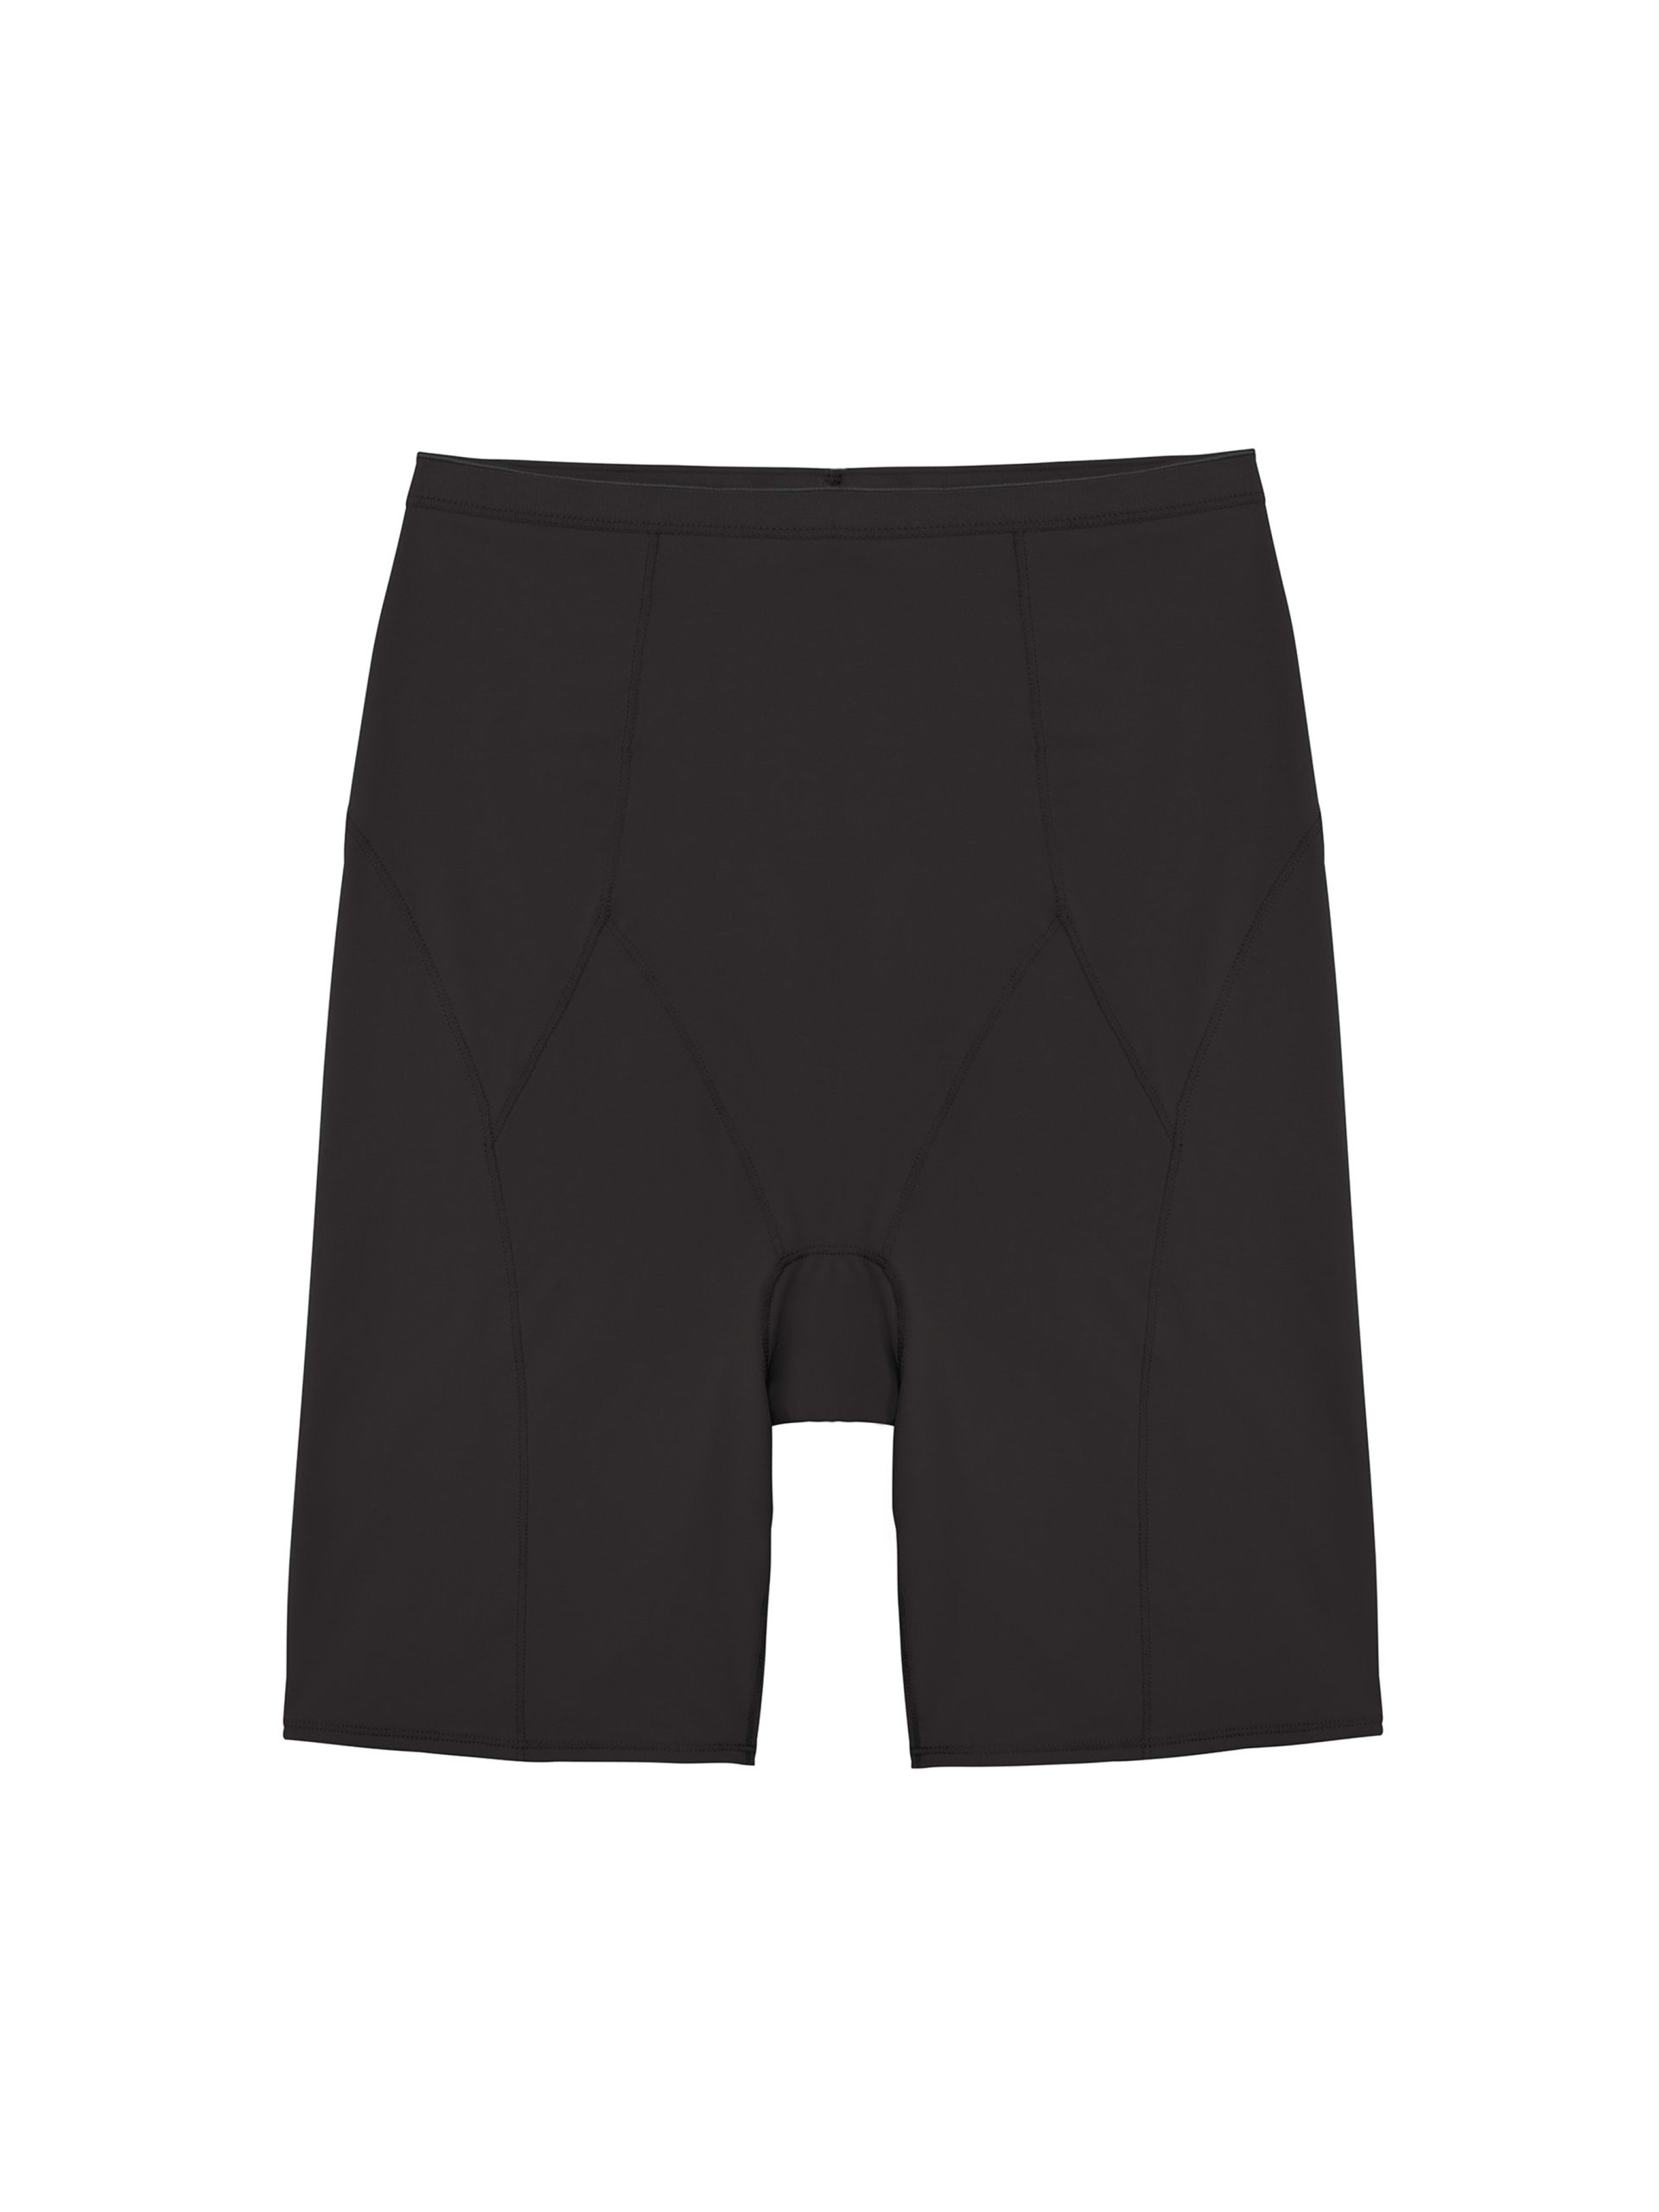 Women's InstantFigure WBSH010 Shapewear Hi-Waist Boy Shorts (Black L) 